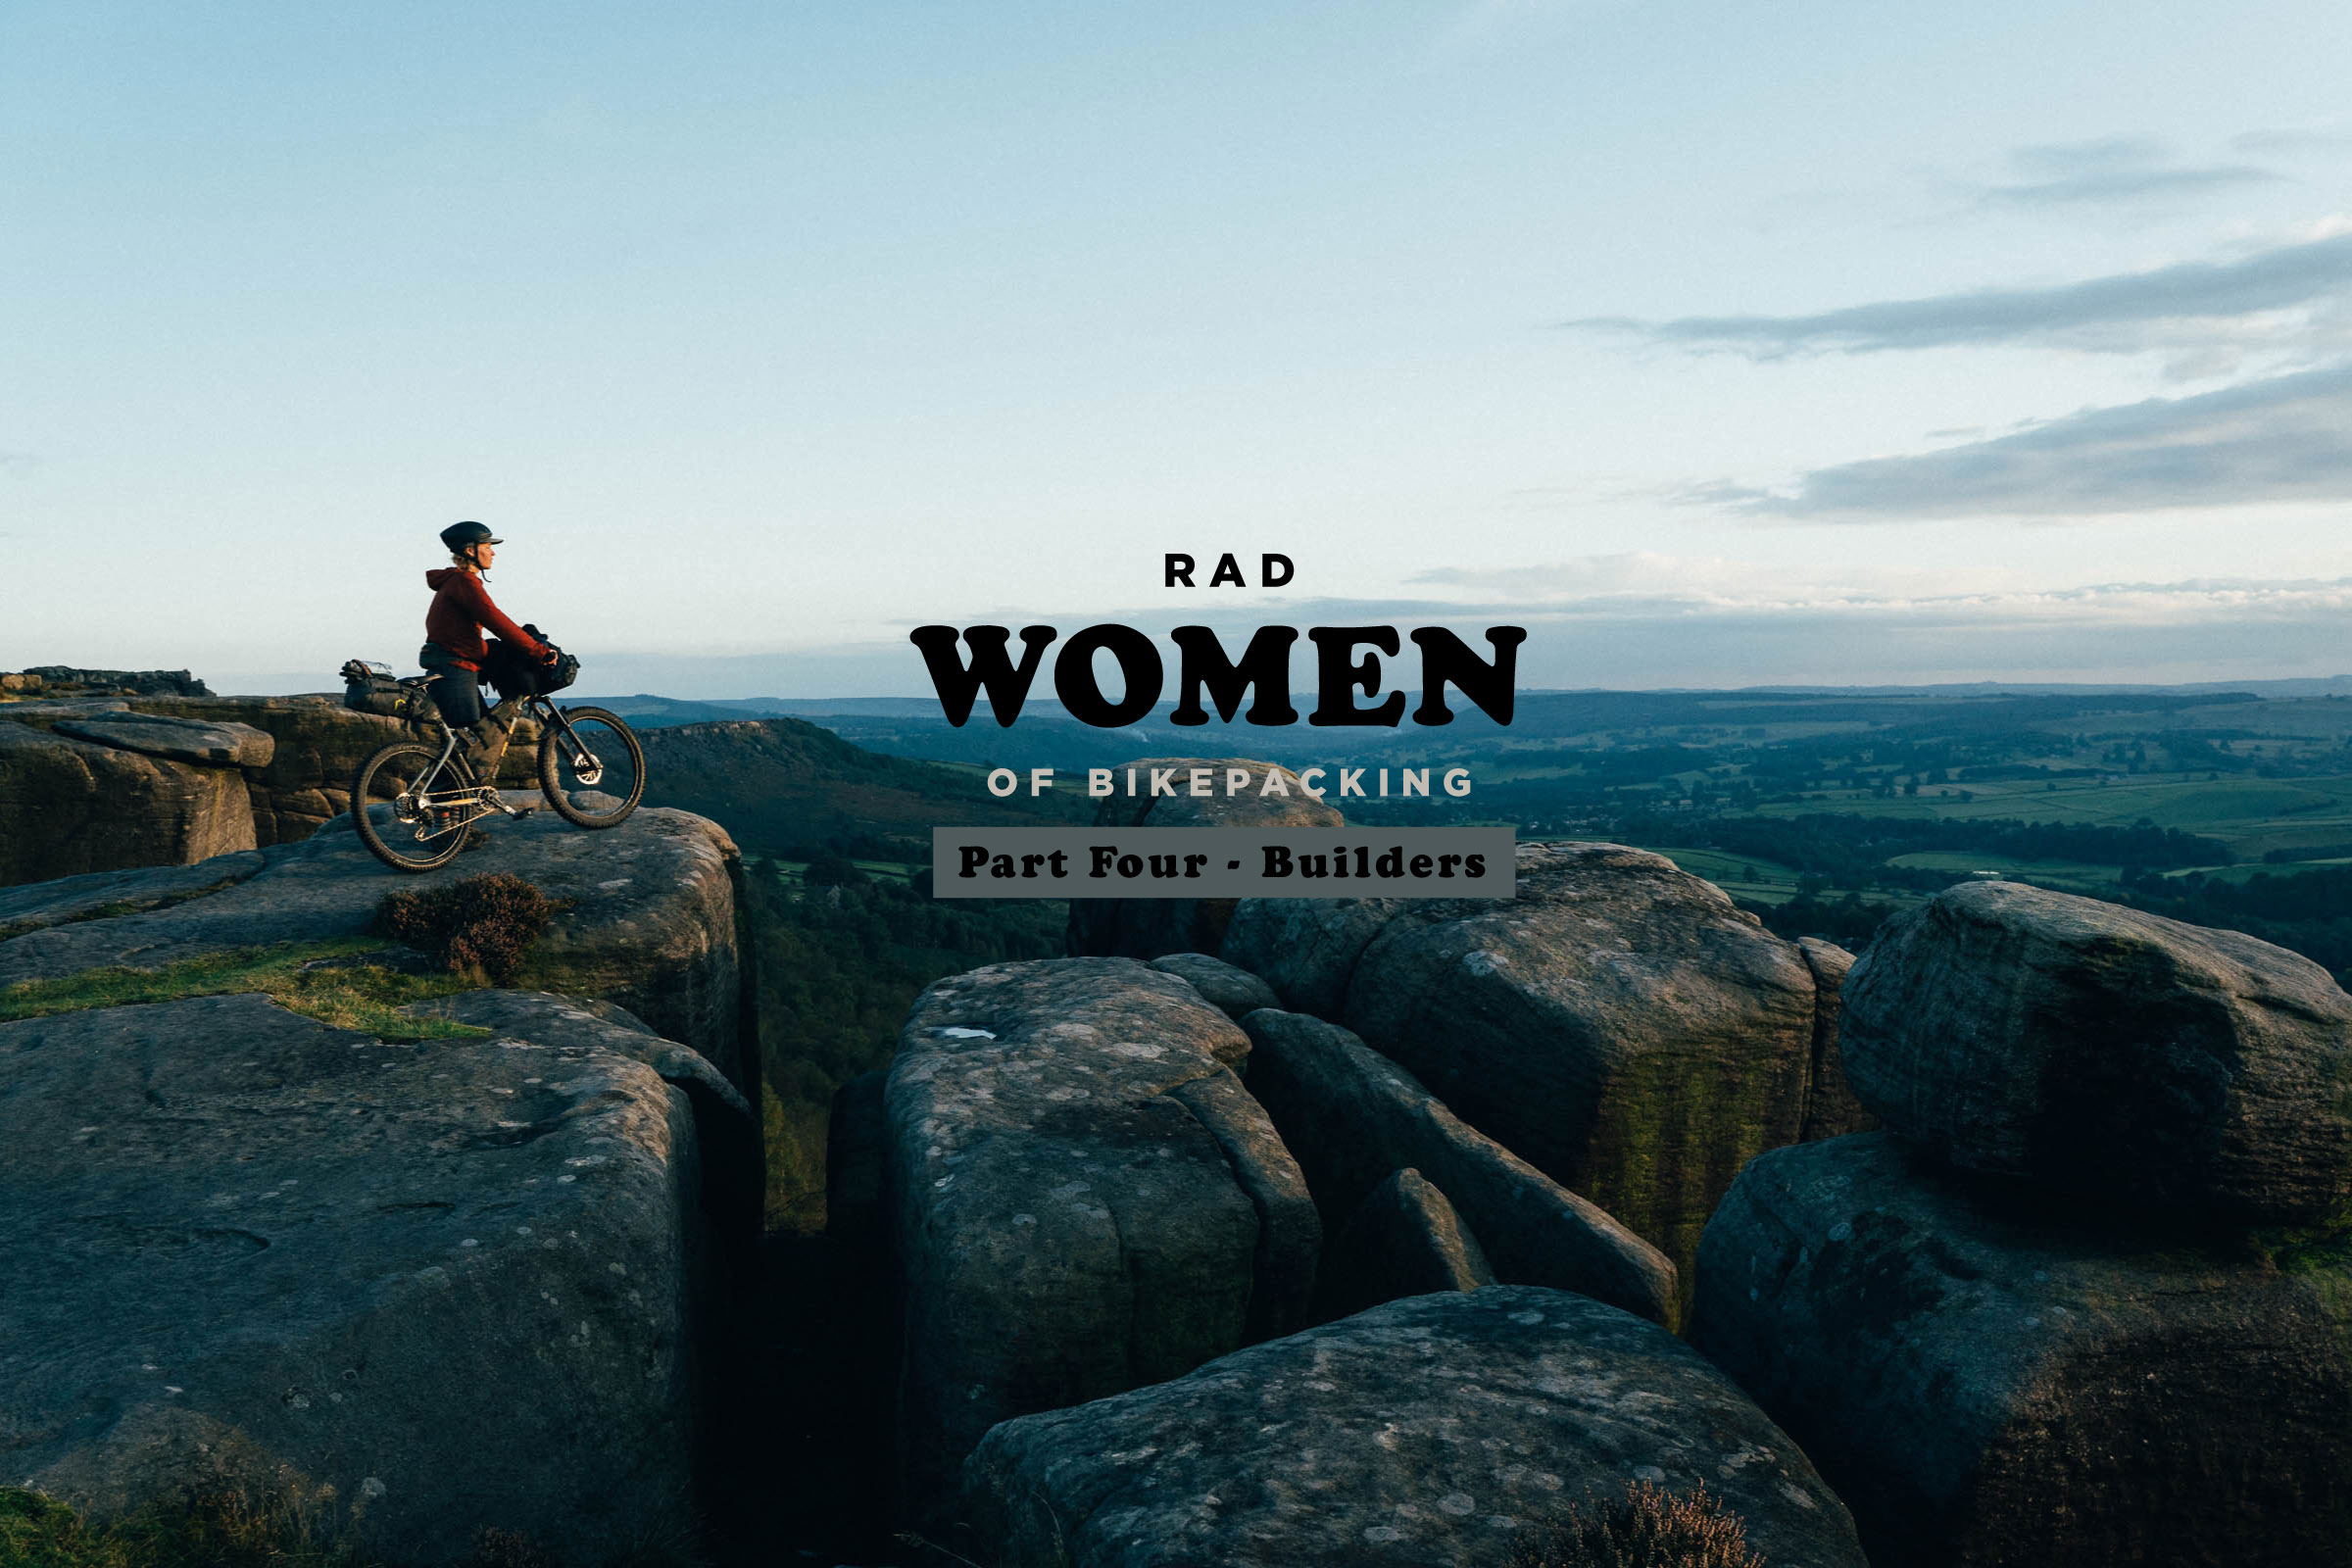 Rad Women of Bikepacking, Builders